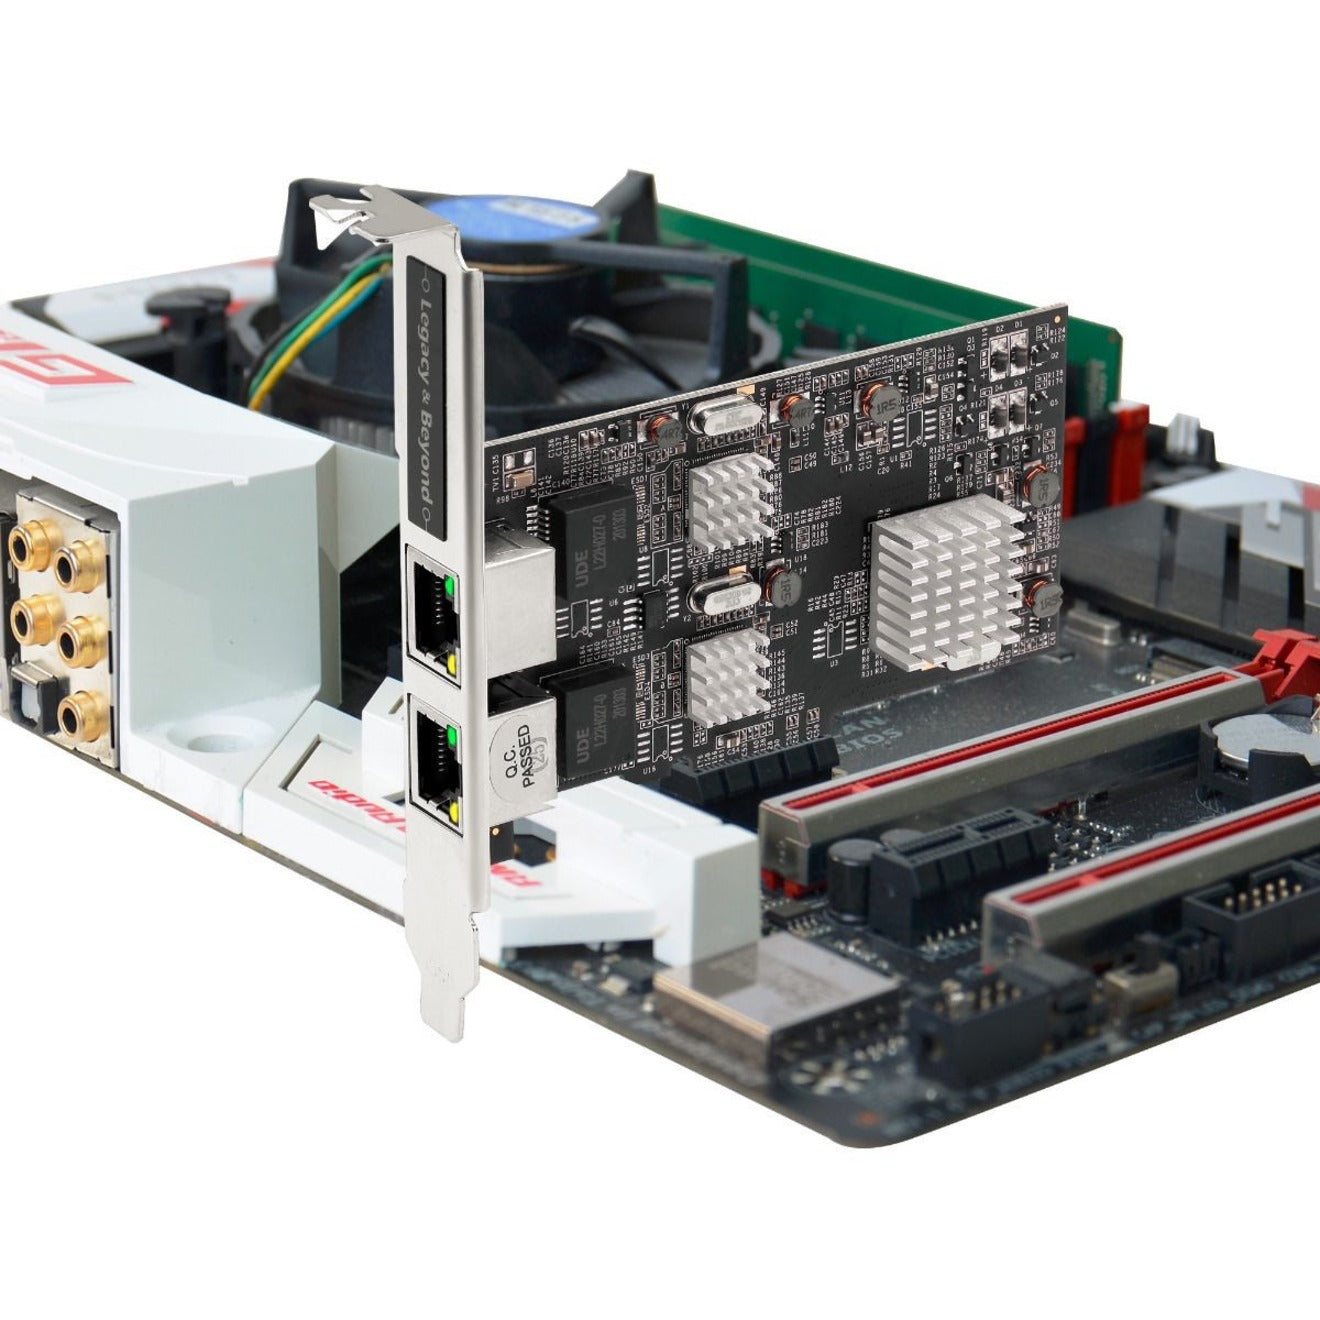 Marca: SIIG Nombre de la marca: SIIG  Tarjeta PCIe de Ethernet Multi-Gigabit de doble velocidad 2.5G 4 conectividad de red de alta velocidad